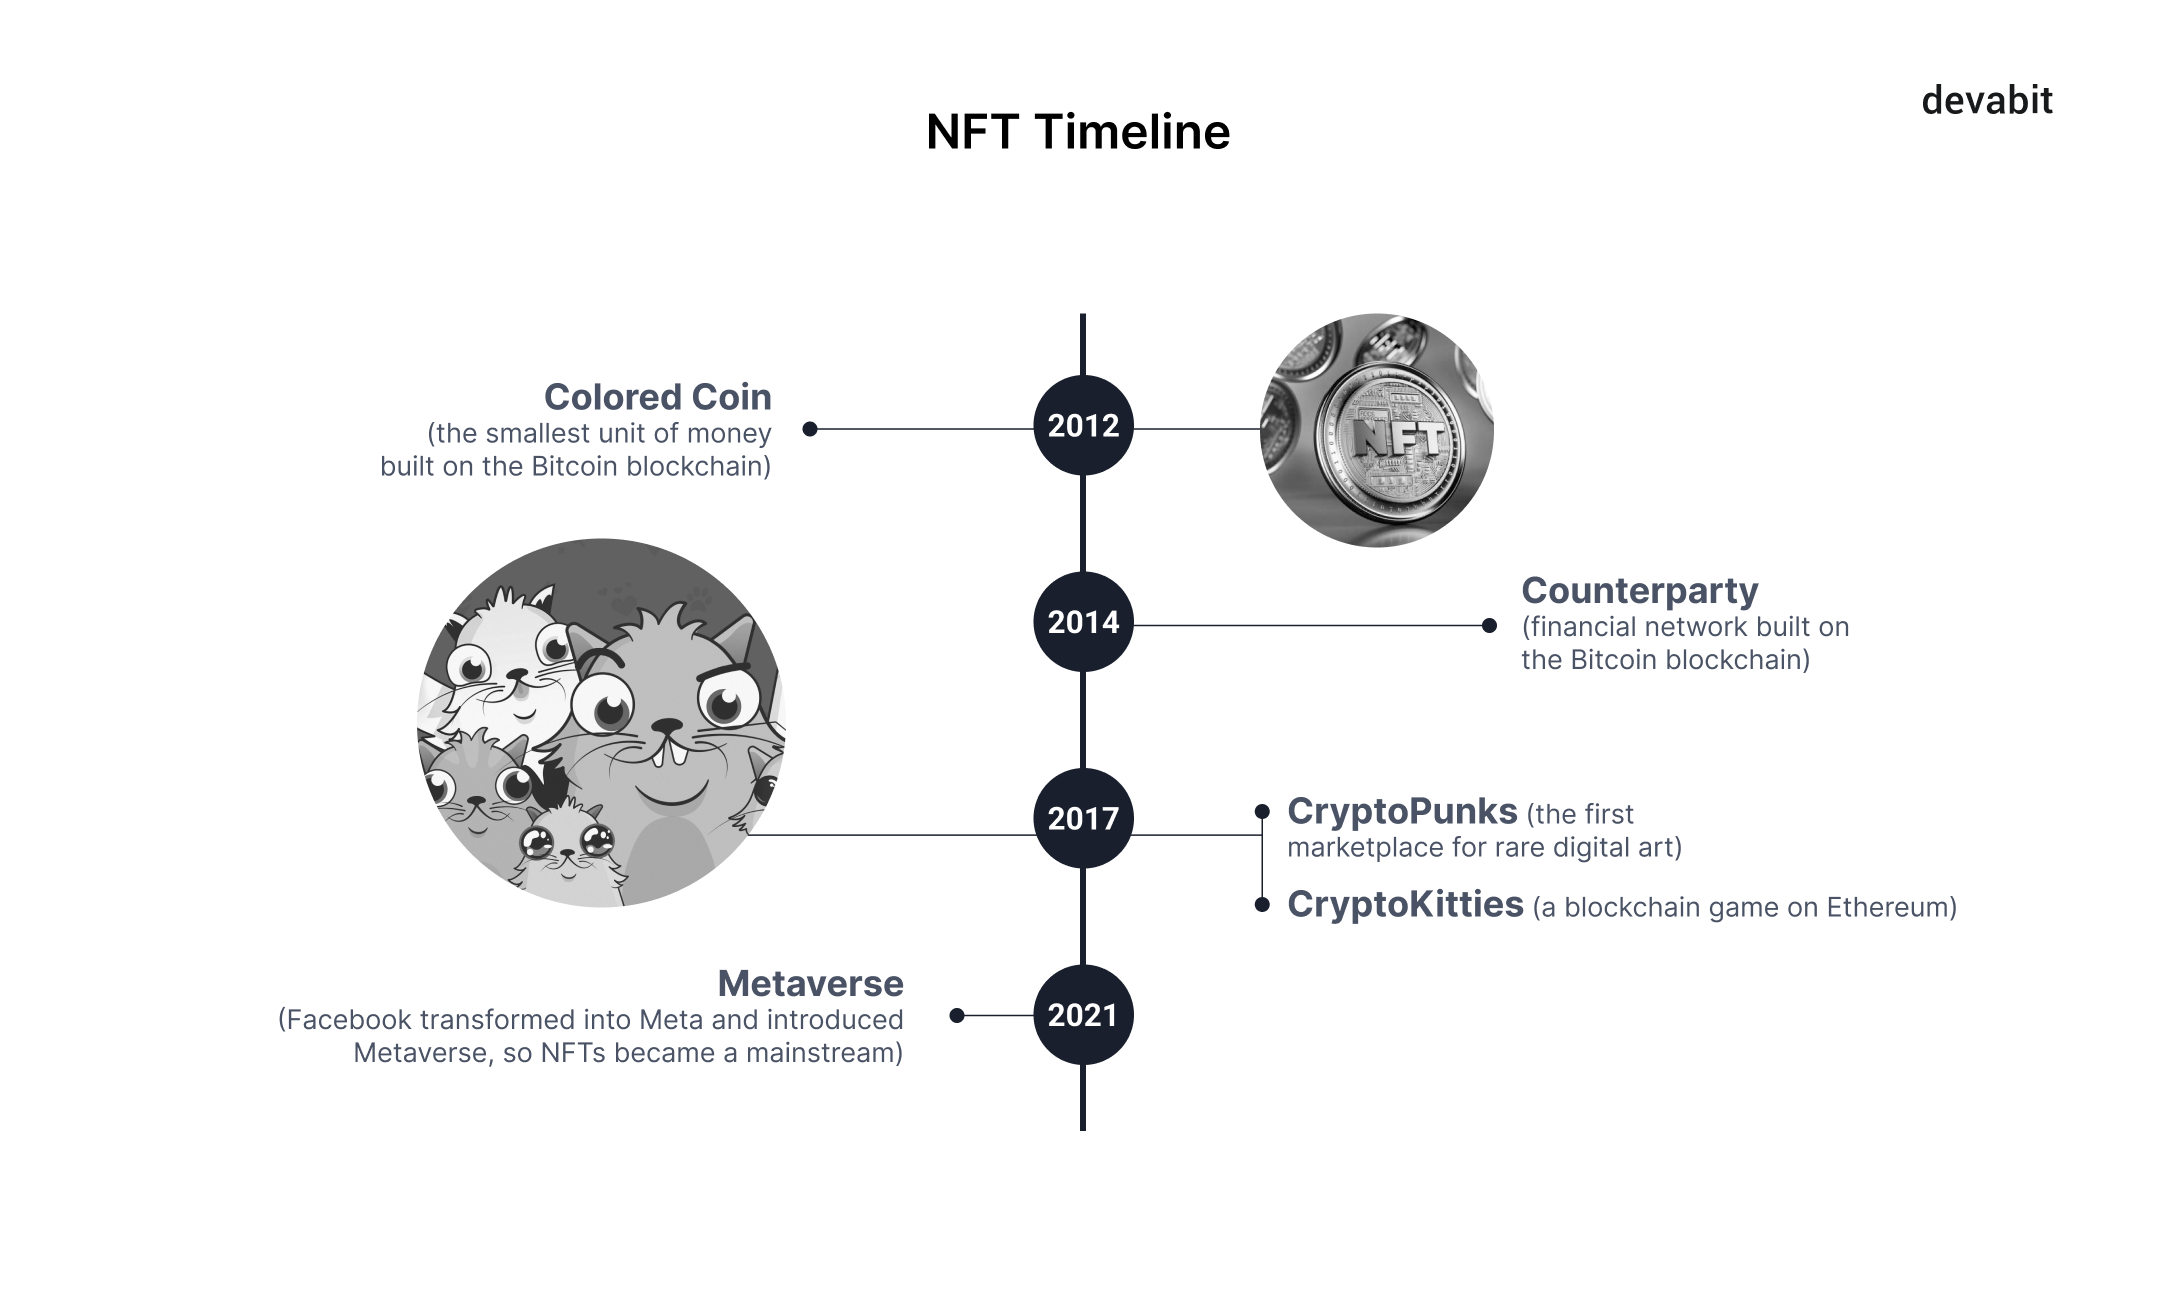 Top 10 emerging technologies 2022: NFT timeline by devabit